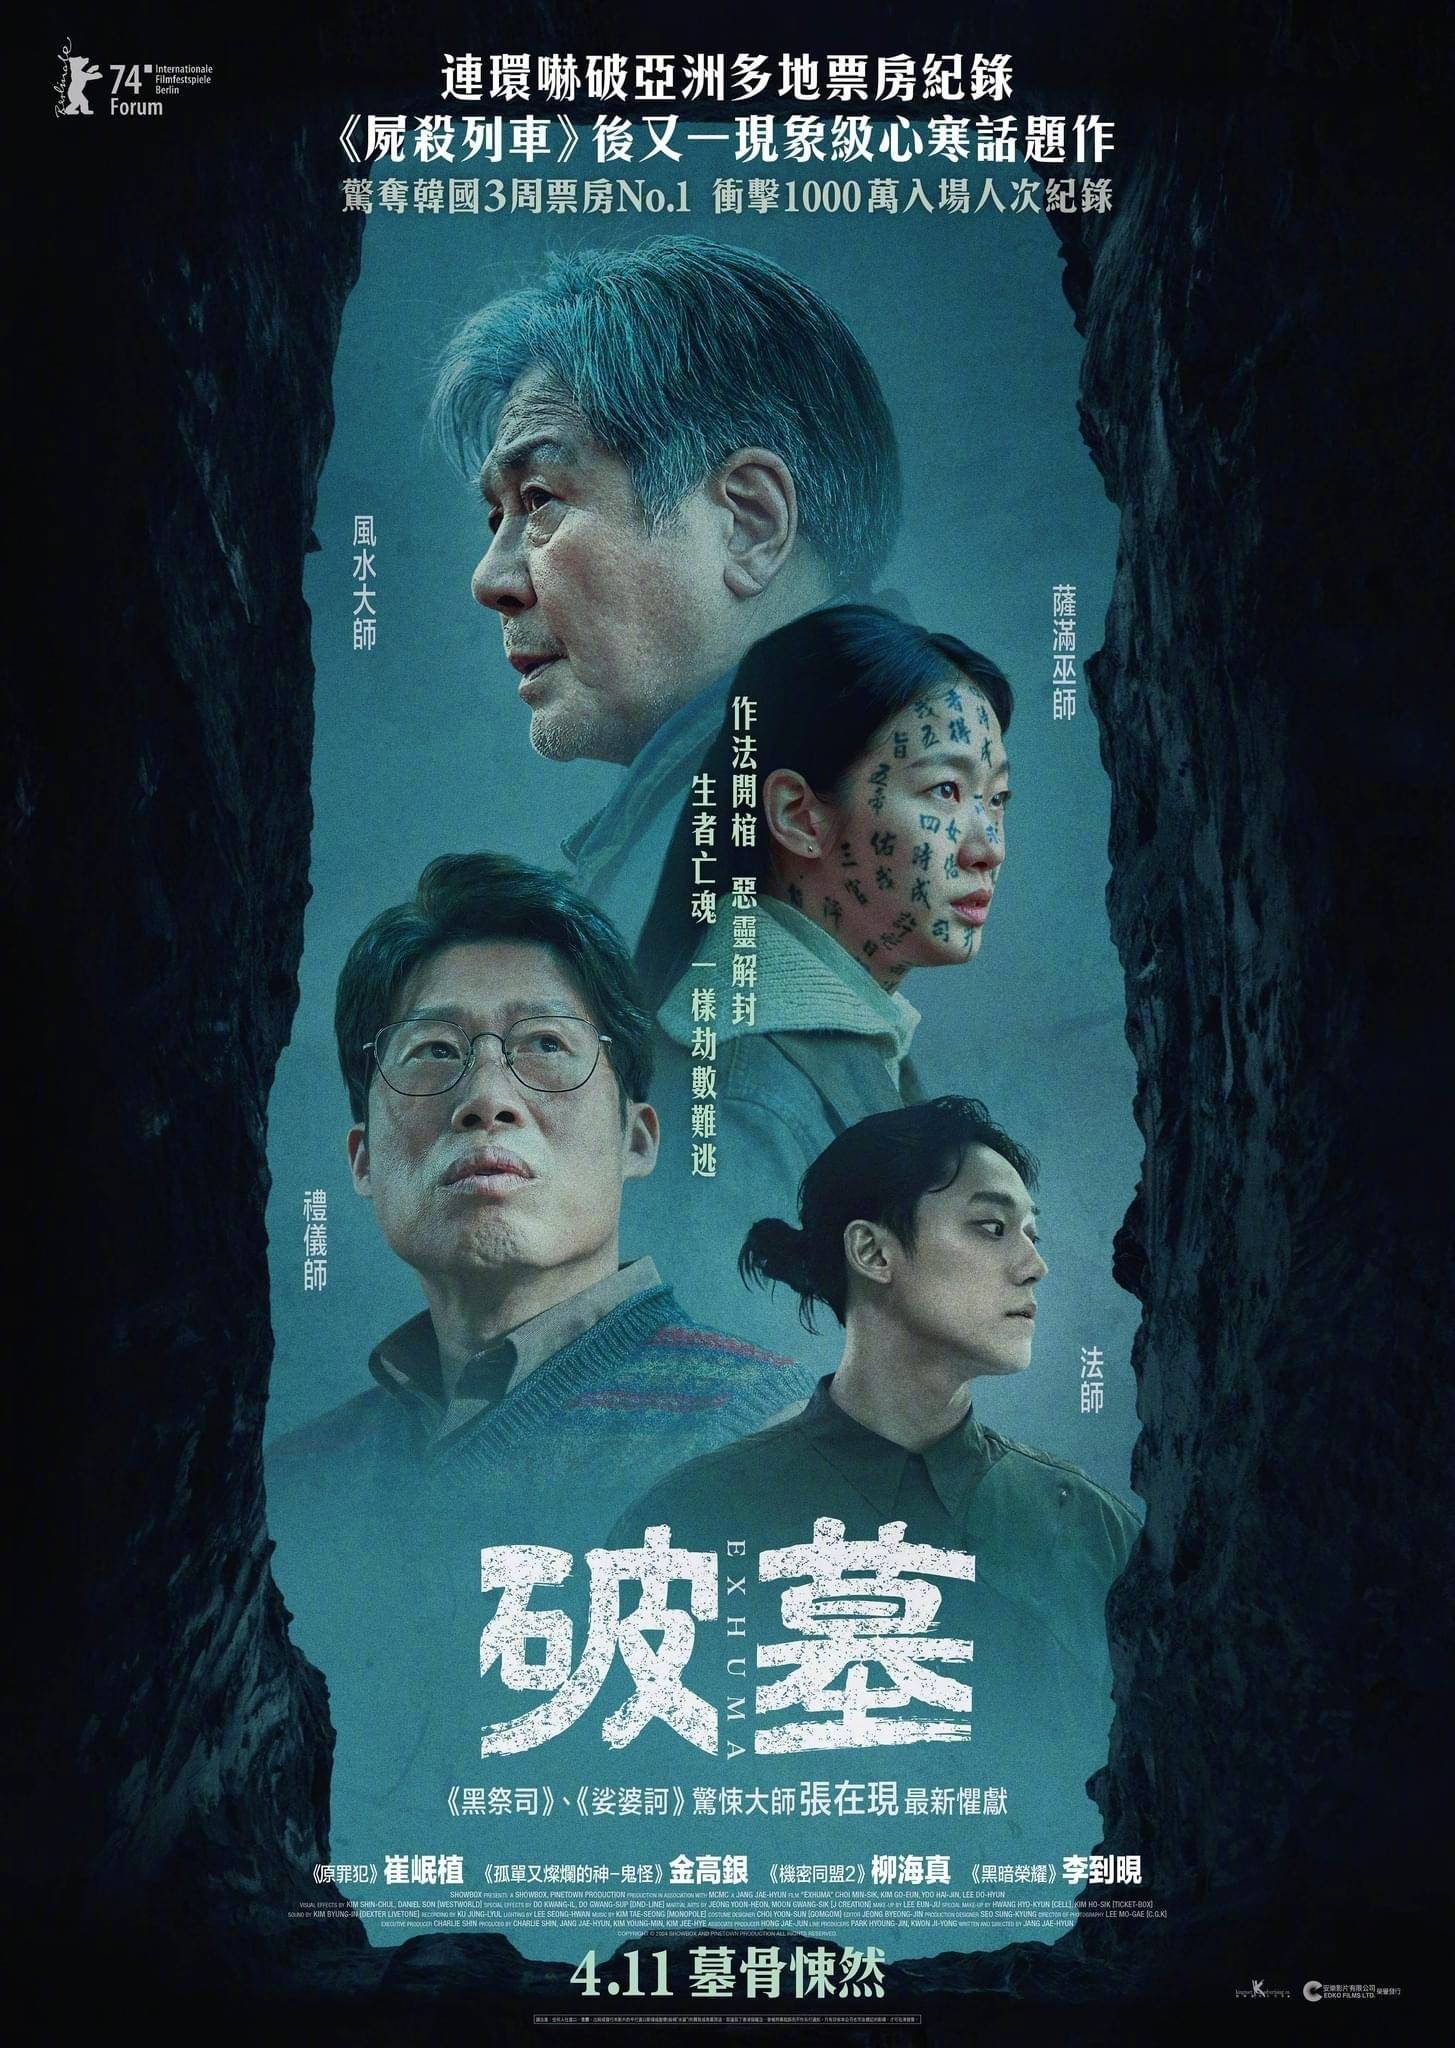 韩国大热惊悚片《破墓》发布港版海报 将于4月11日在中国香港上映